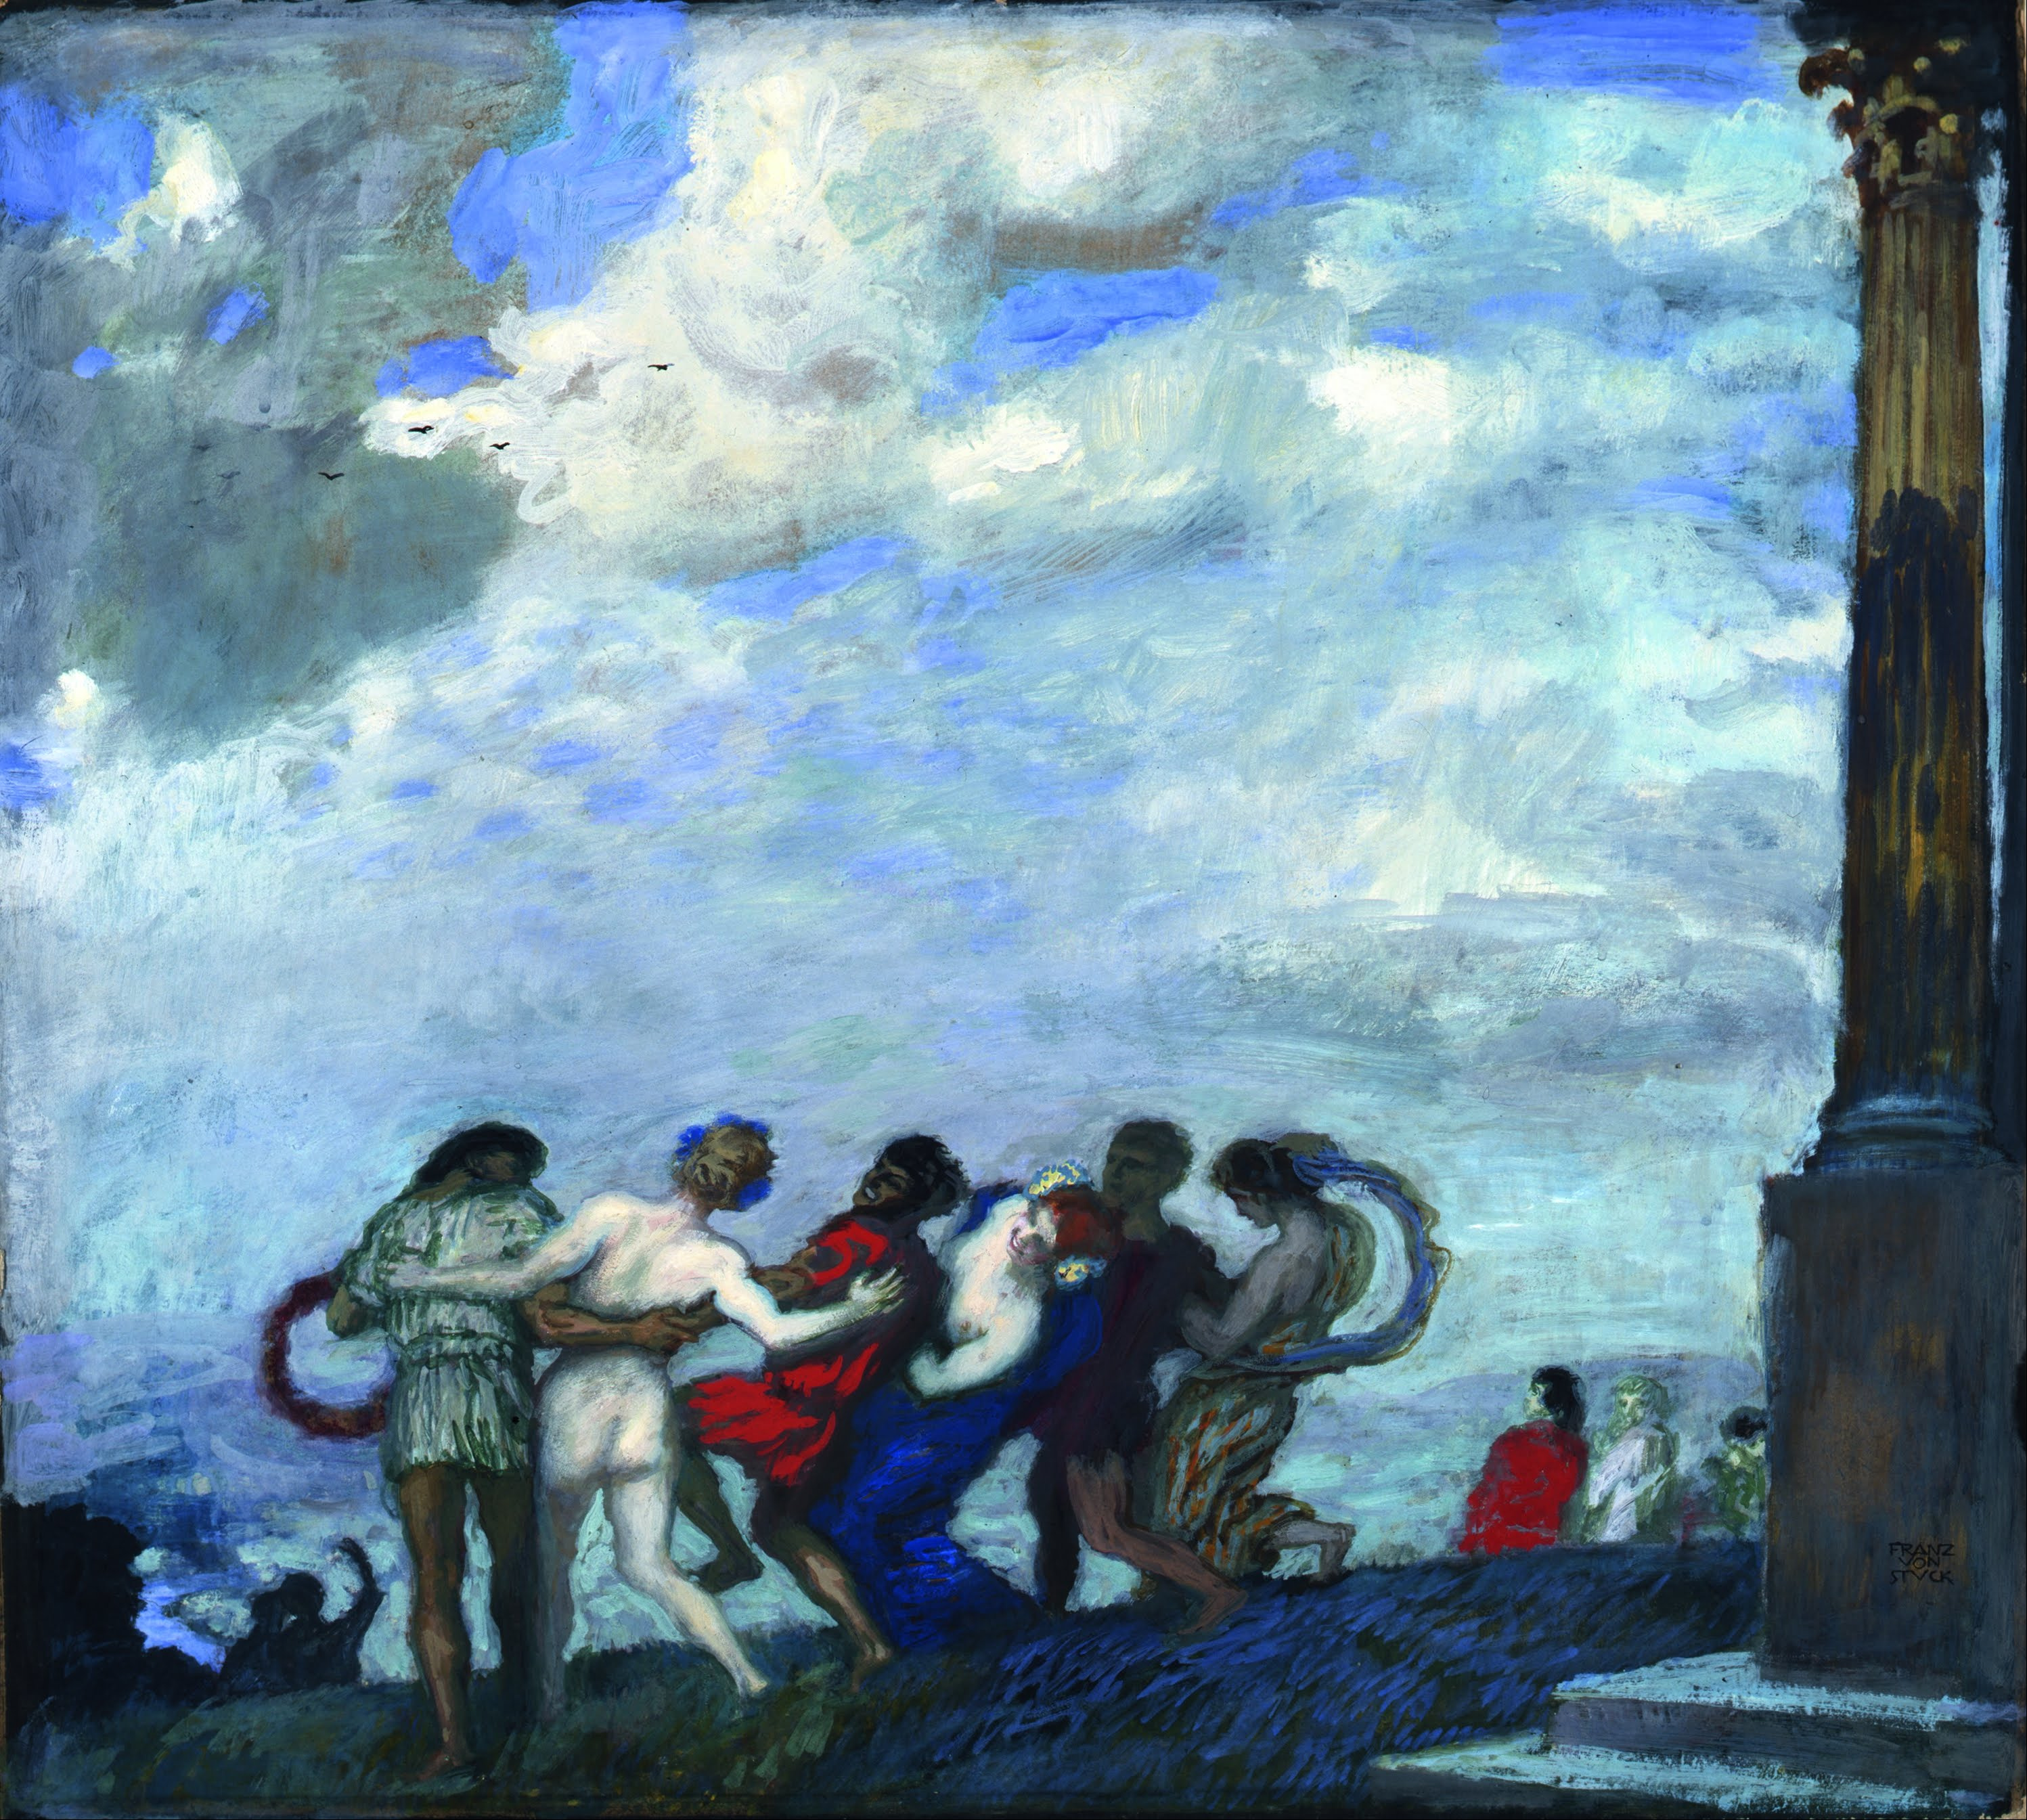 La danza by Franz von Stuck - 1910 - 79,5 x 71 cm 